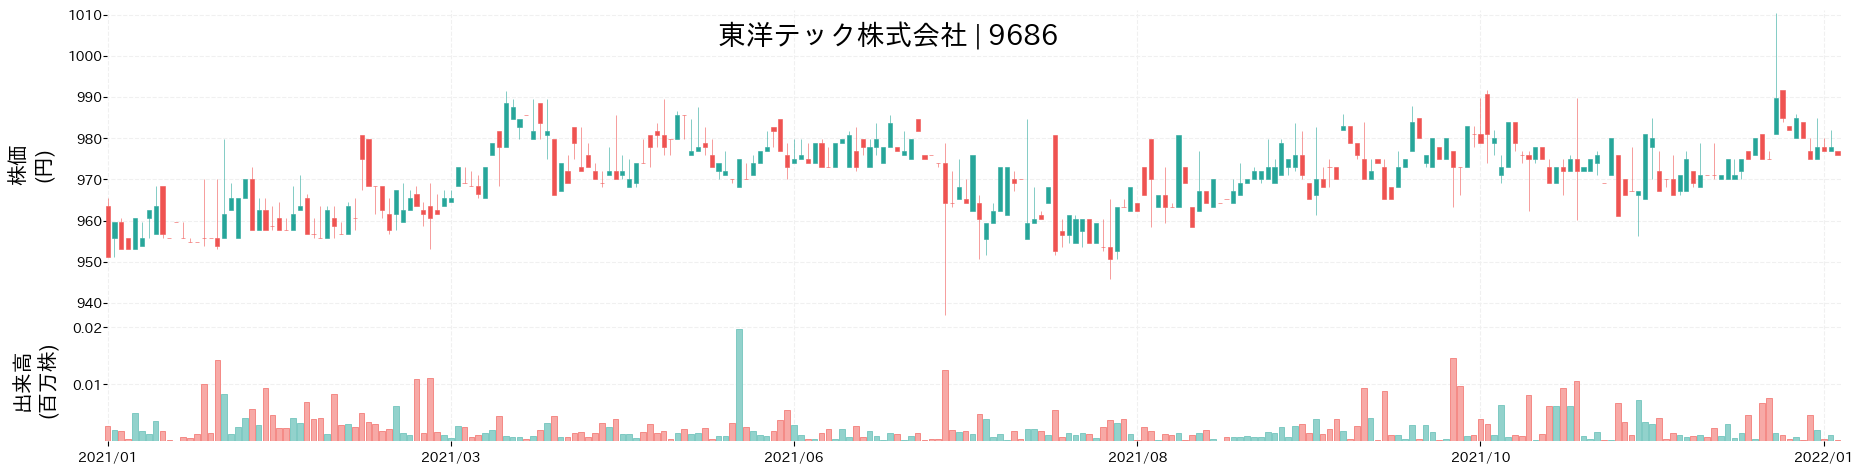 東洋テックの株価推移(2021)